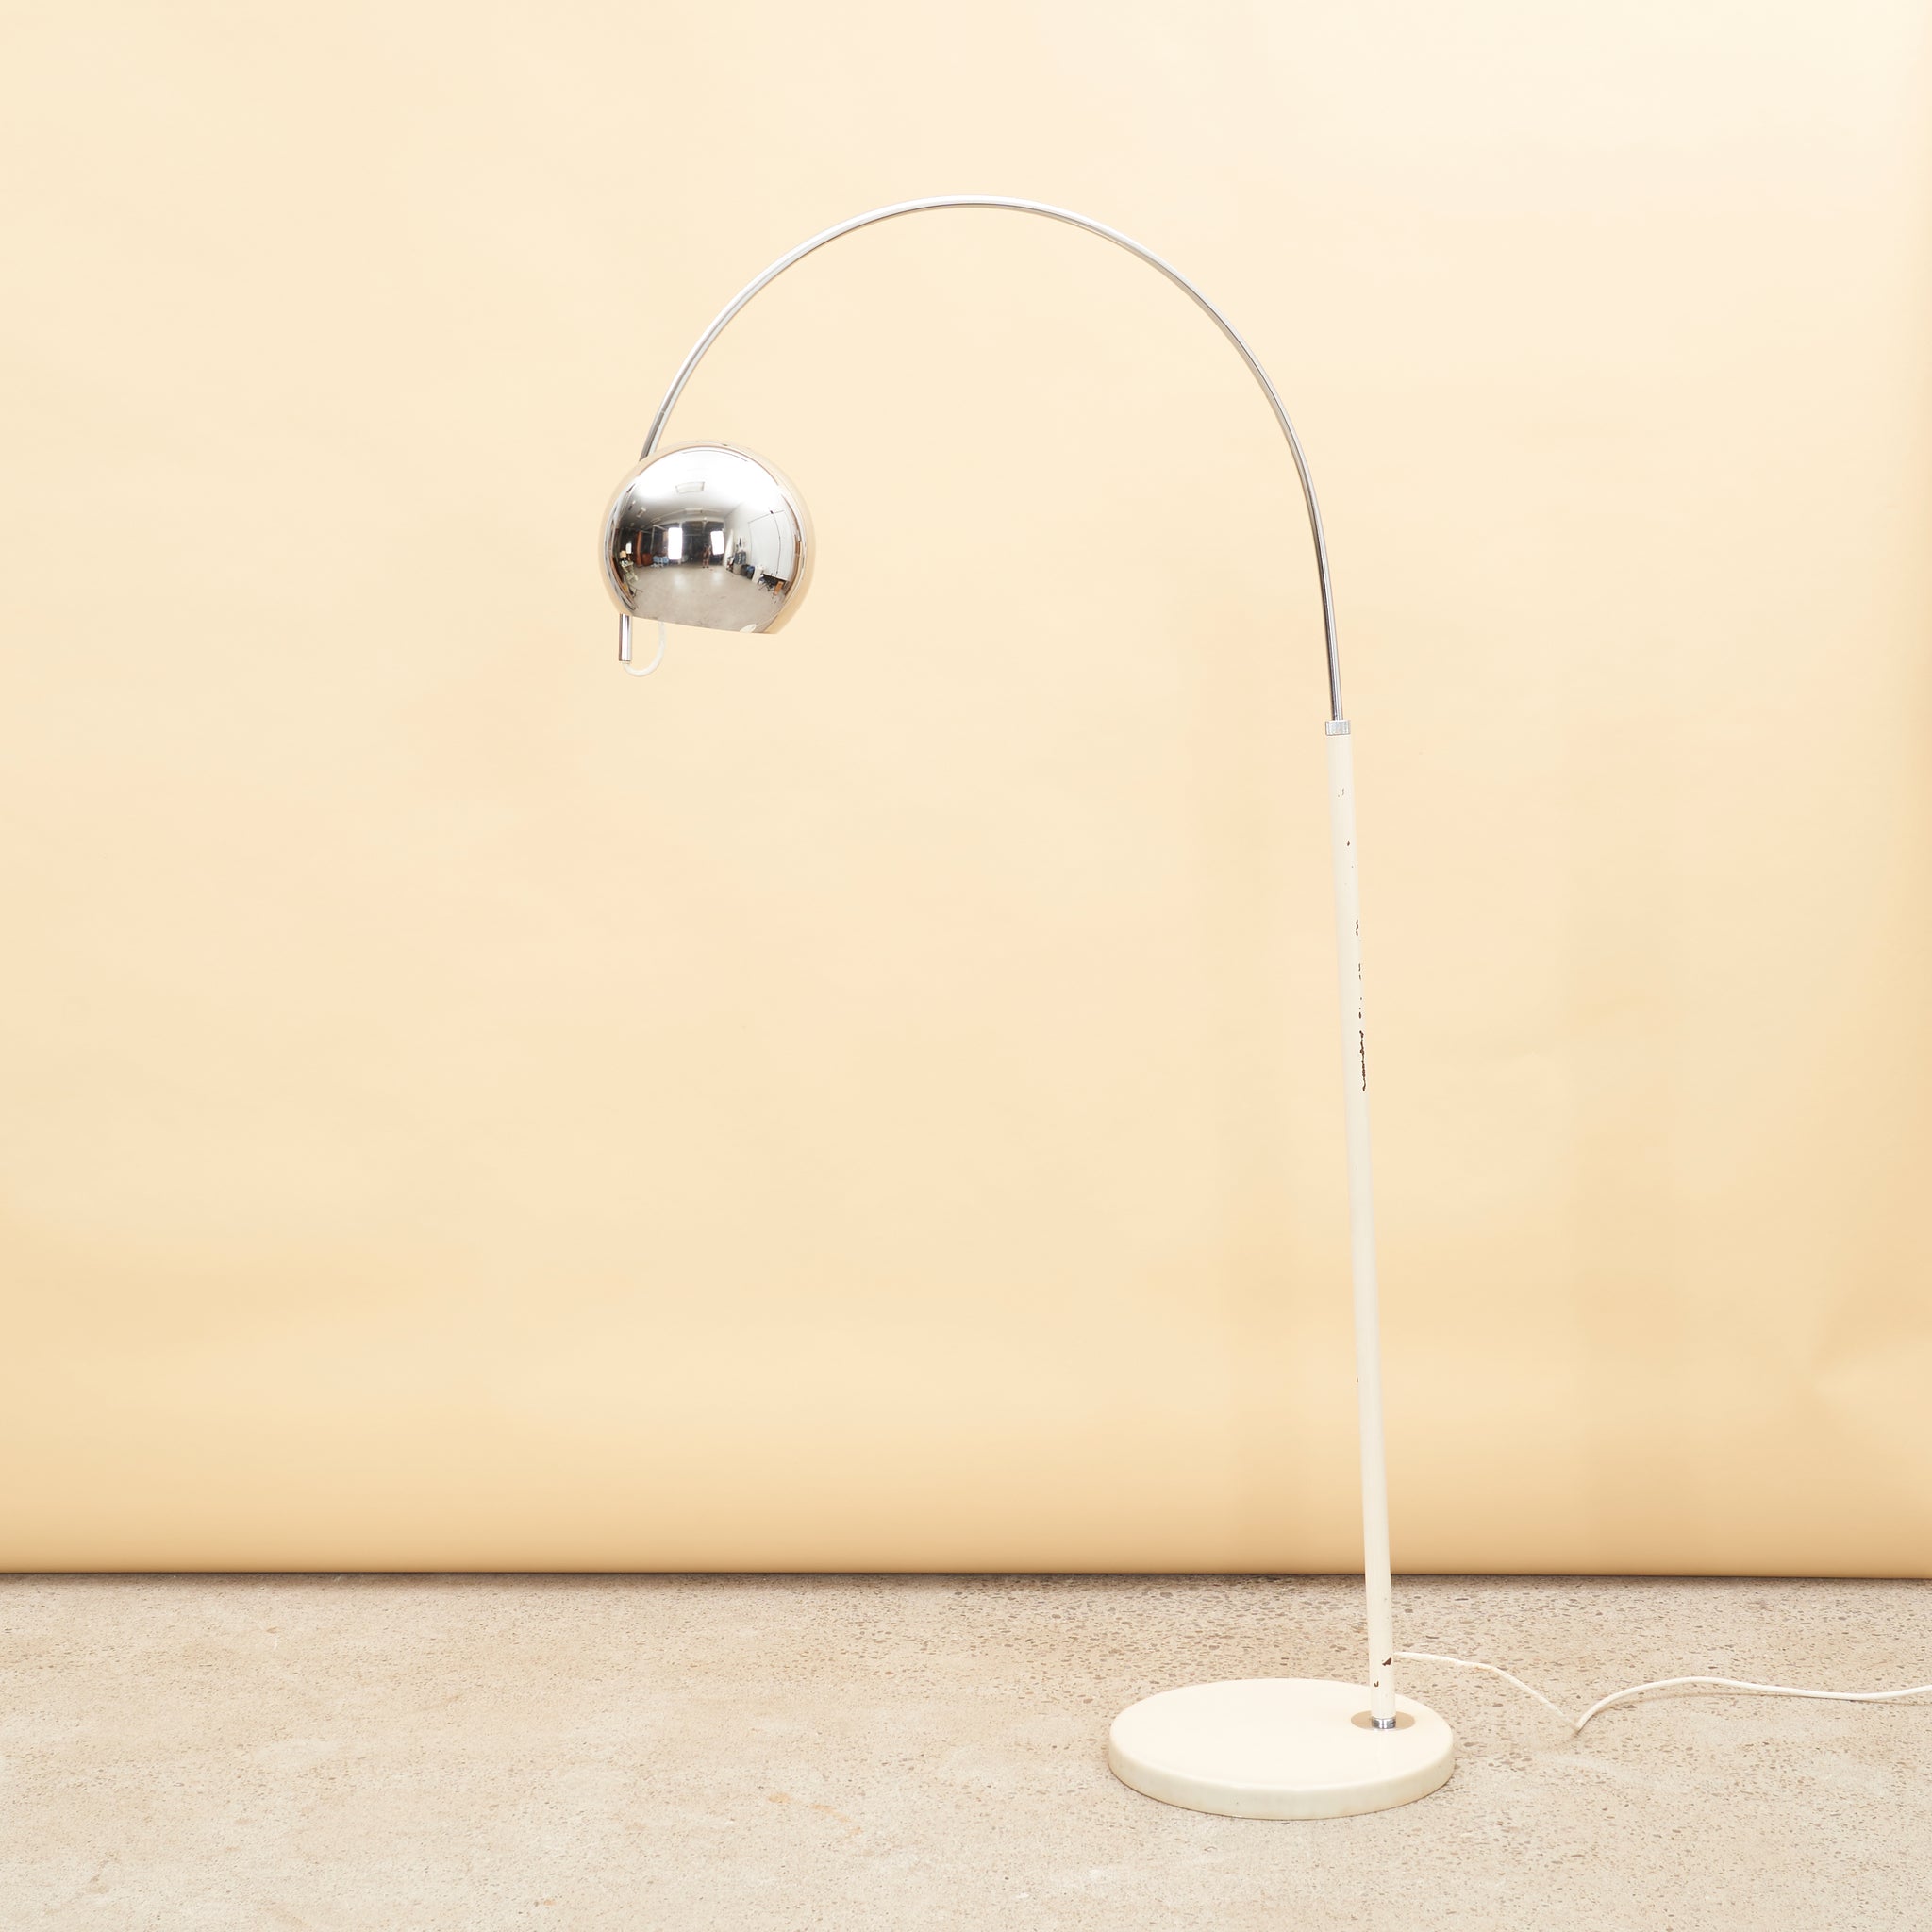 Cream & Chrome Arc Lamp